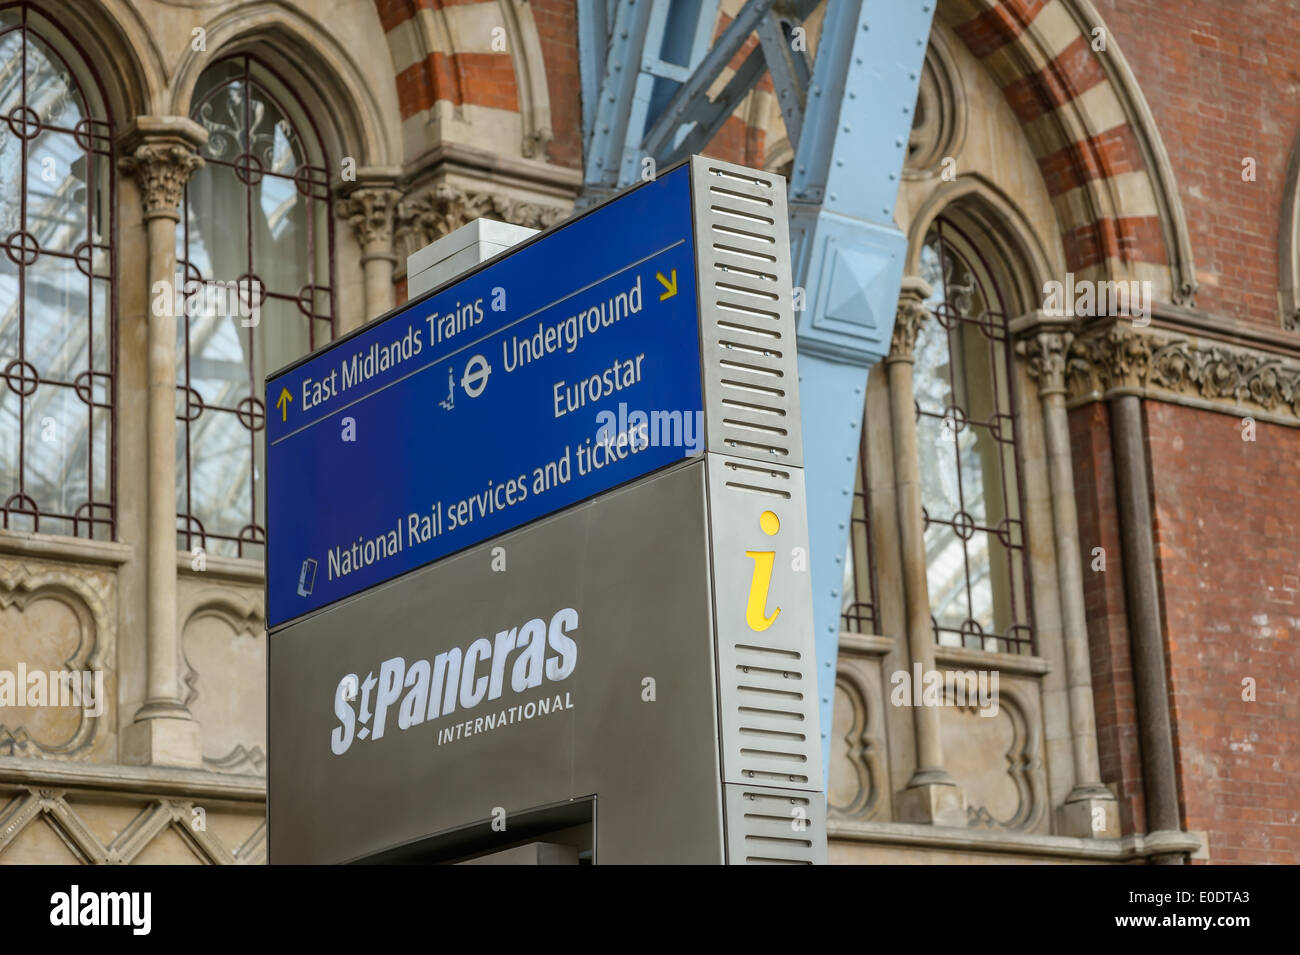 Una lettera gialla simbolo "i" su un punto di informazione a Londra Eurostar mozzo, alla stazione di St Pancras Londra Gran Bretagna UK terminale. Foto Stock